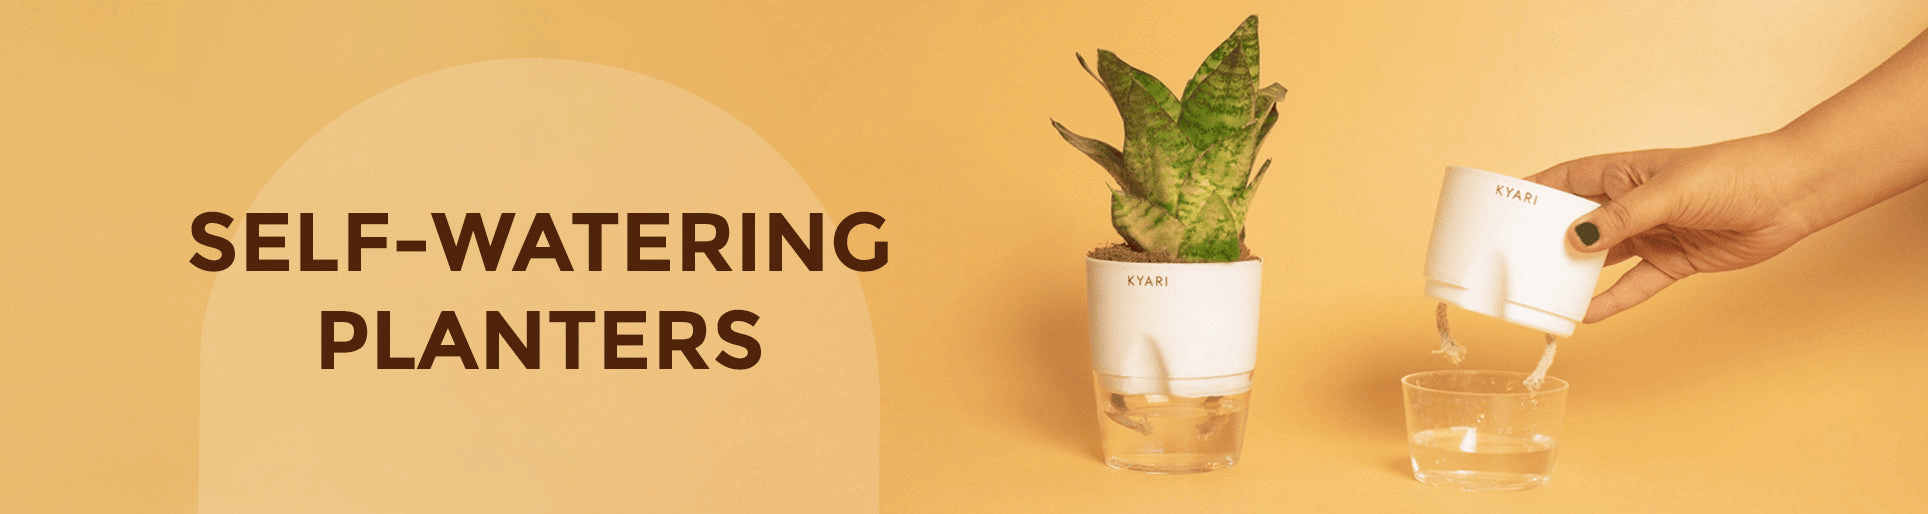 self-watering plants